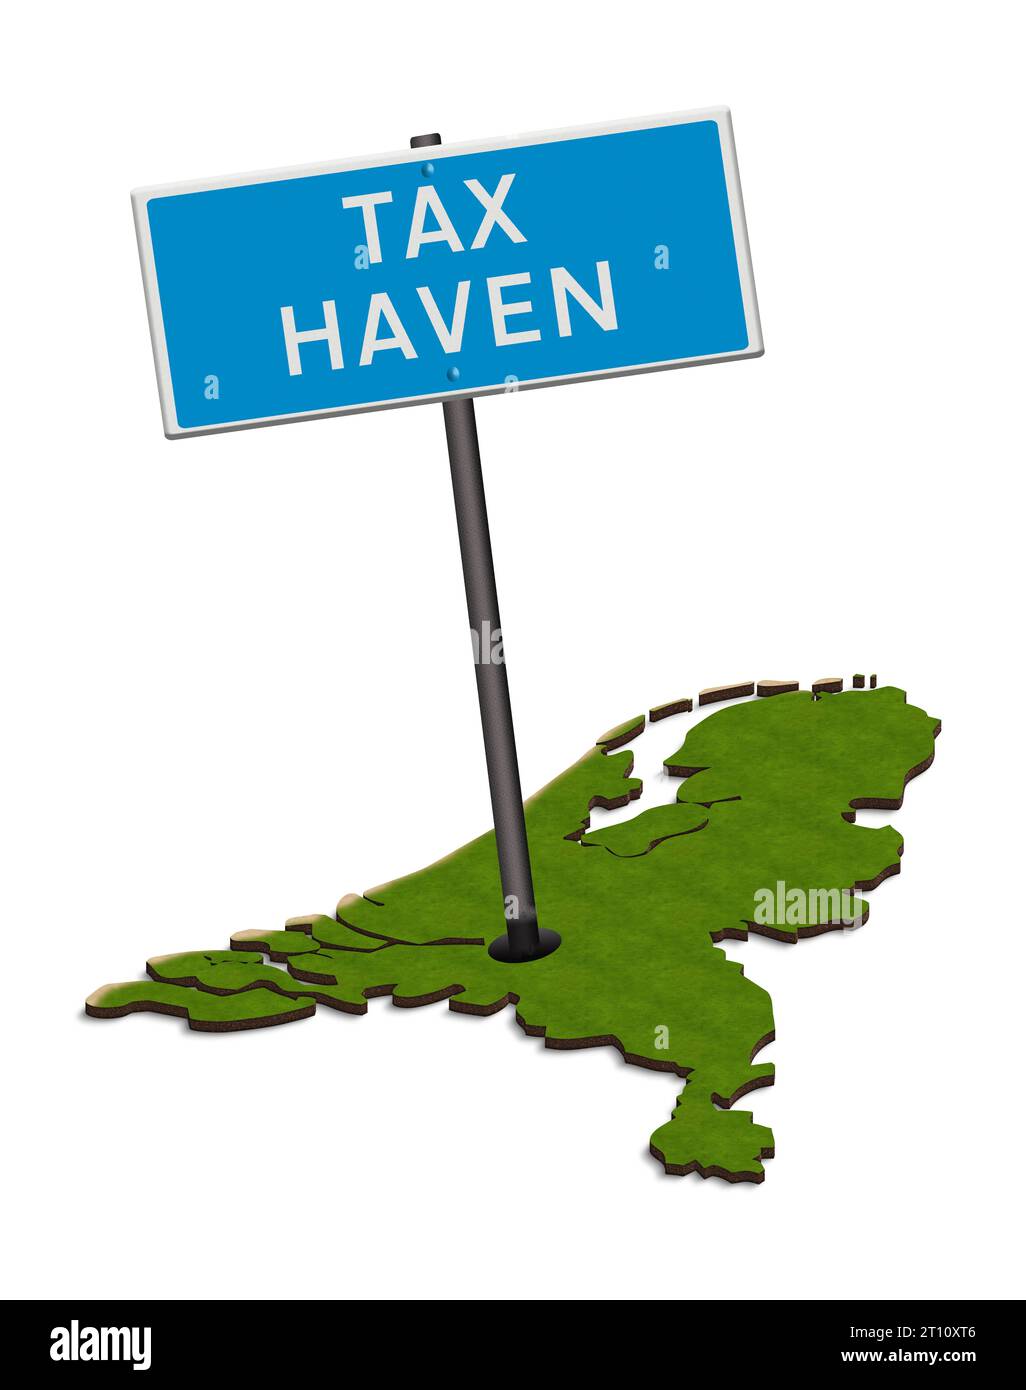 Zeichentrick - Schild Steuerparadies mit Karte der Niederlande. Die Niederlande werden häufig als Steuerparadies für Körperschaftsteuerzwecke betrachtet. Innerhalb des Landes wird kritisiert, dass die Bürger zahlen, während Unternehmen eine Freifahrt erhalten. Quelle: Imago/Alamy Live News Stockfoto